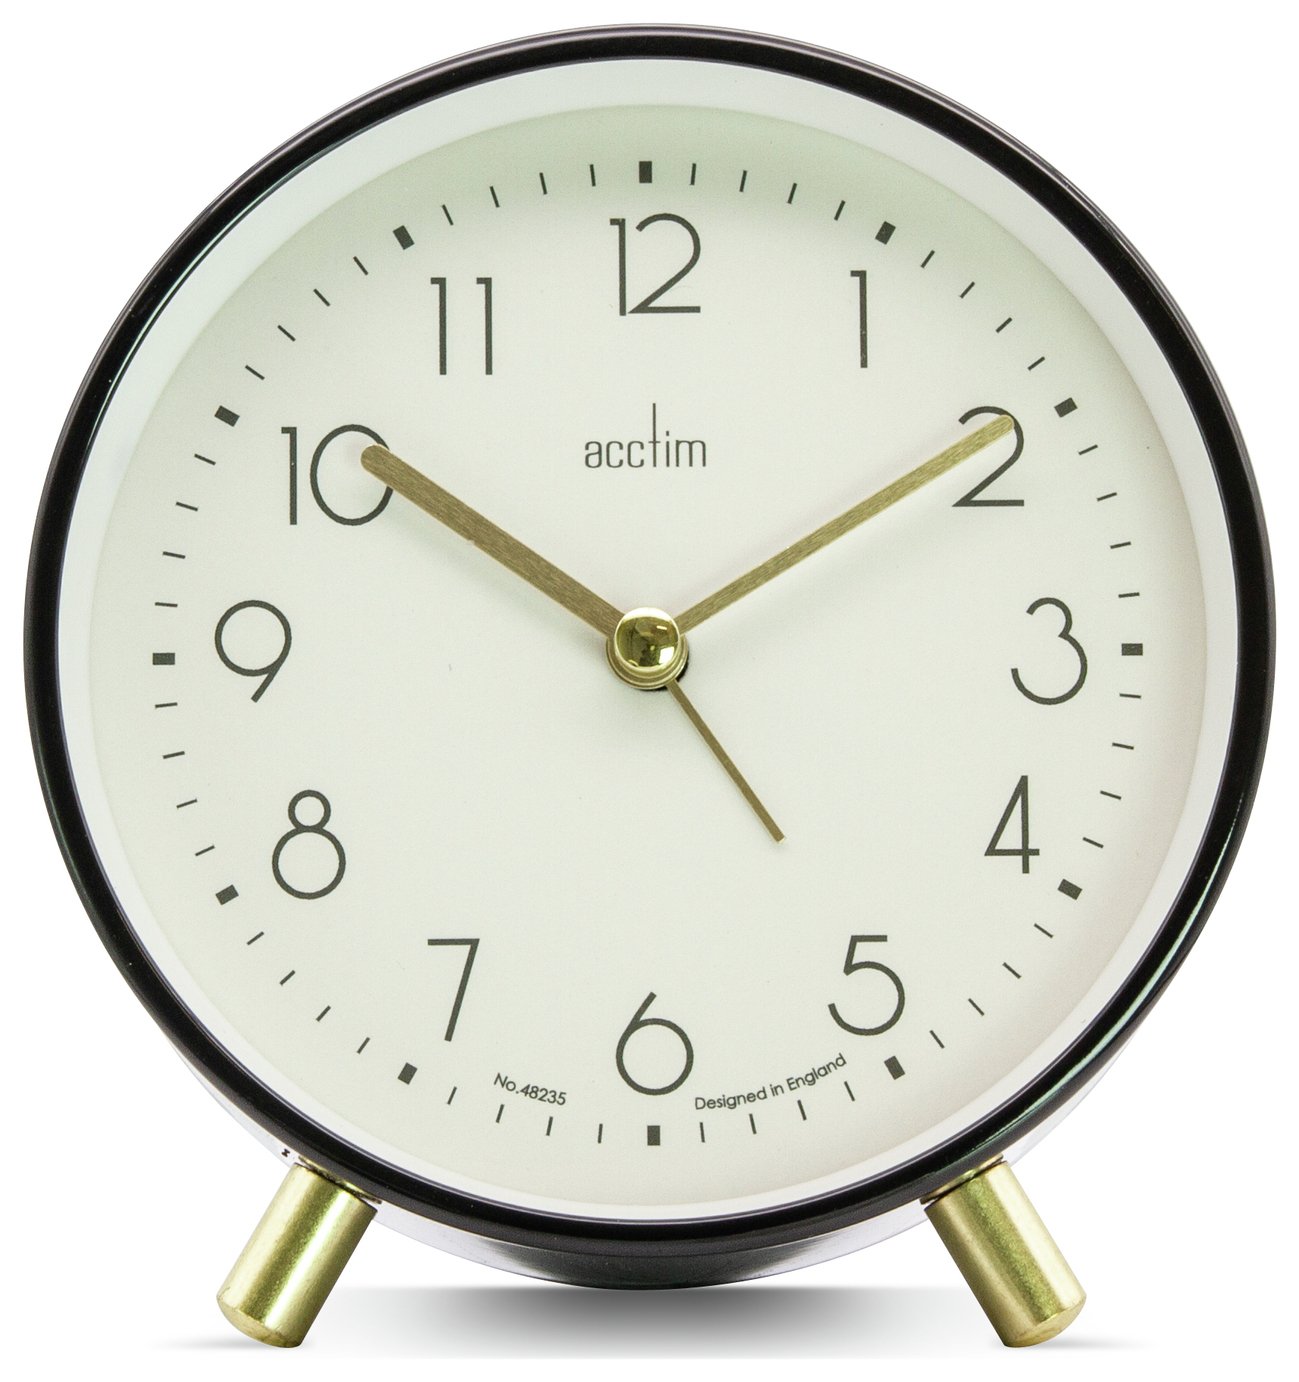 Acctim Fossen Metal Alarm Clock - Black